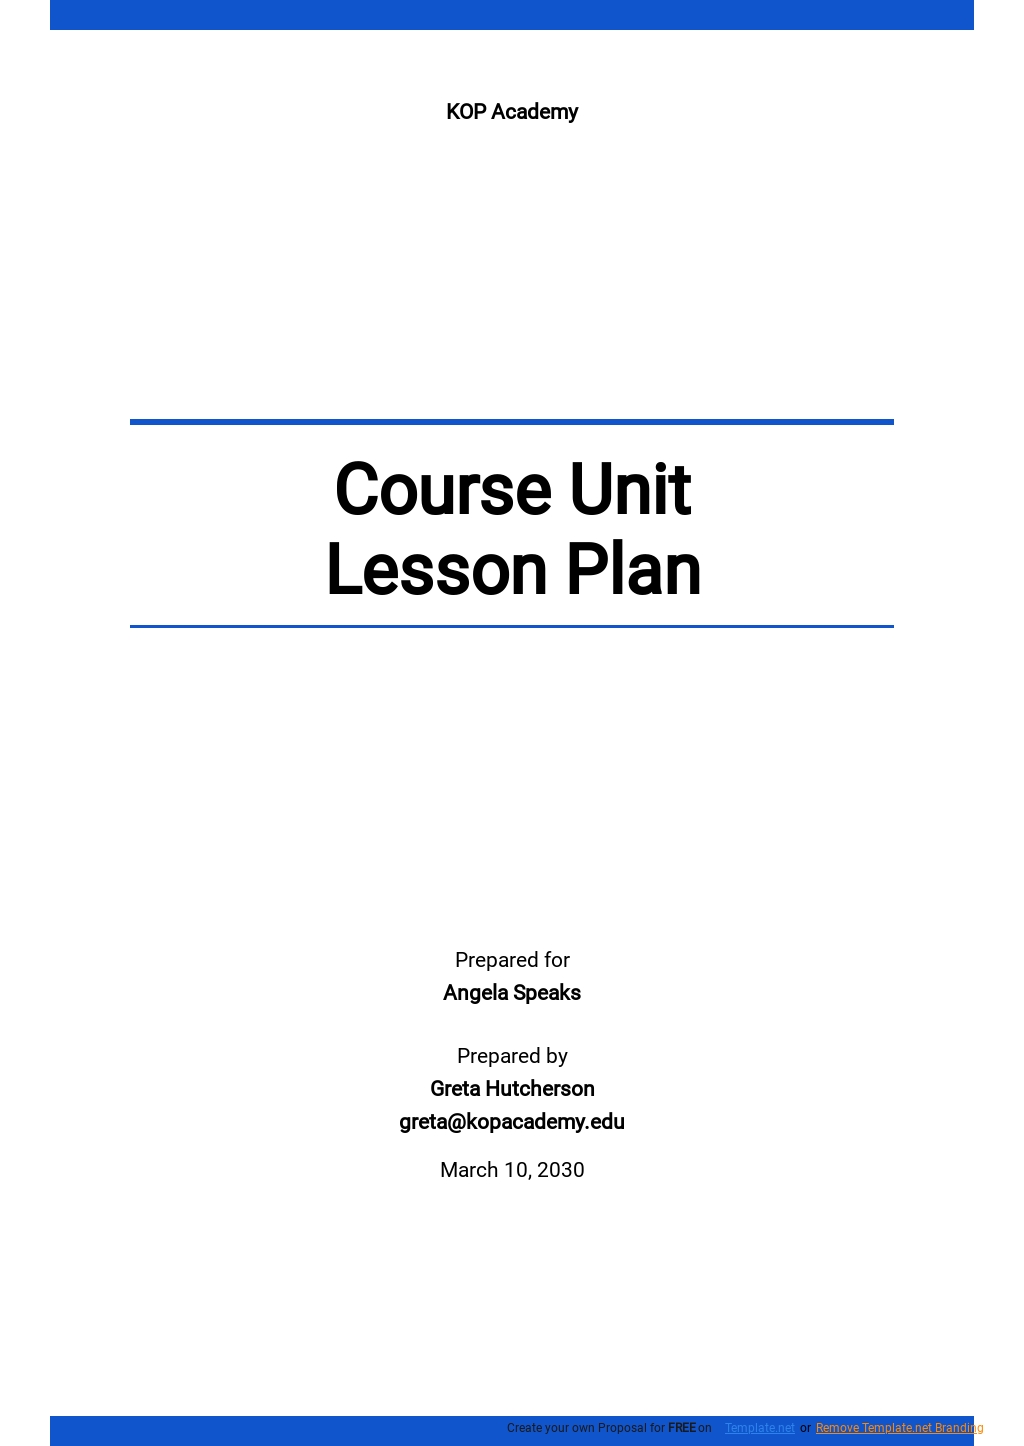 Course Unit Lesson Plan Template.jpe